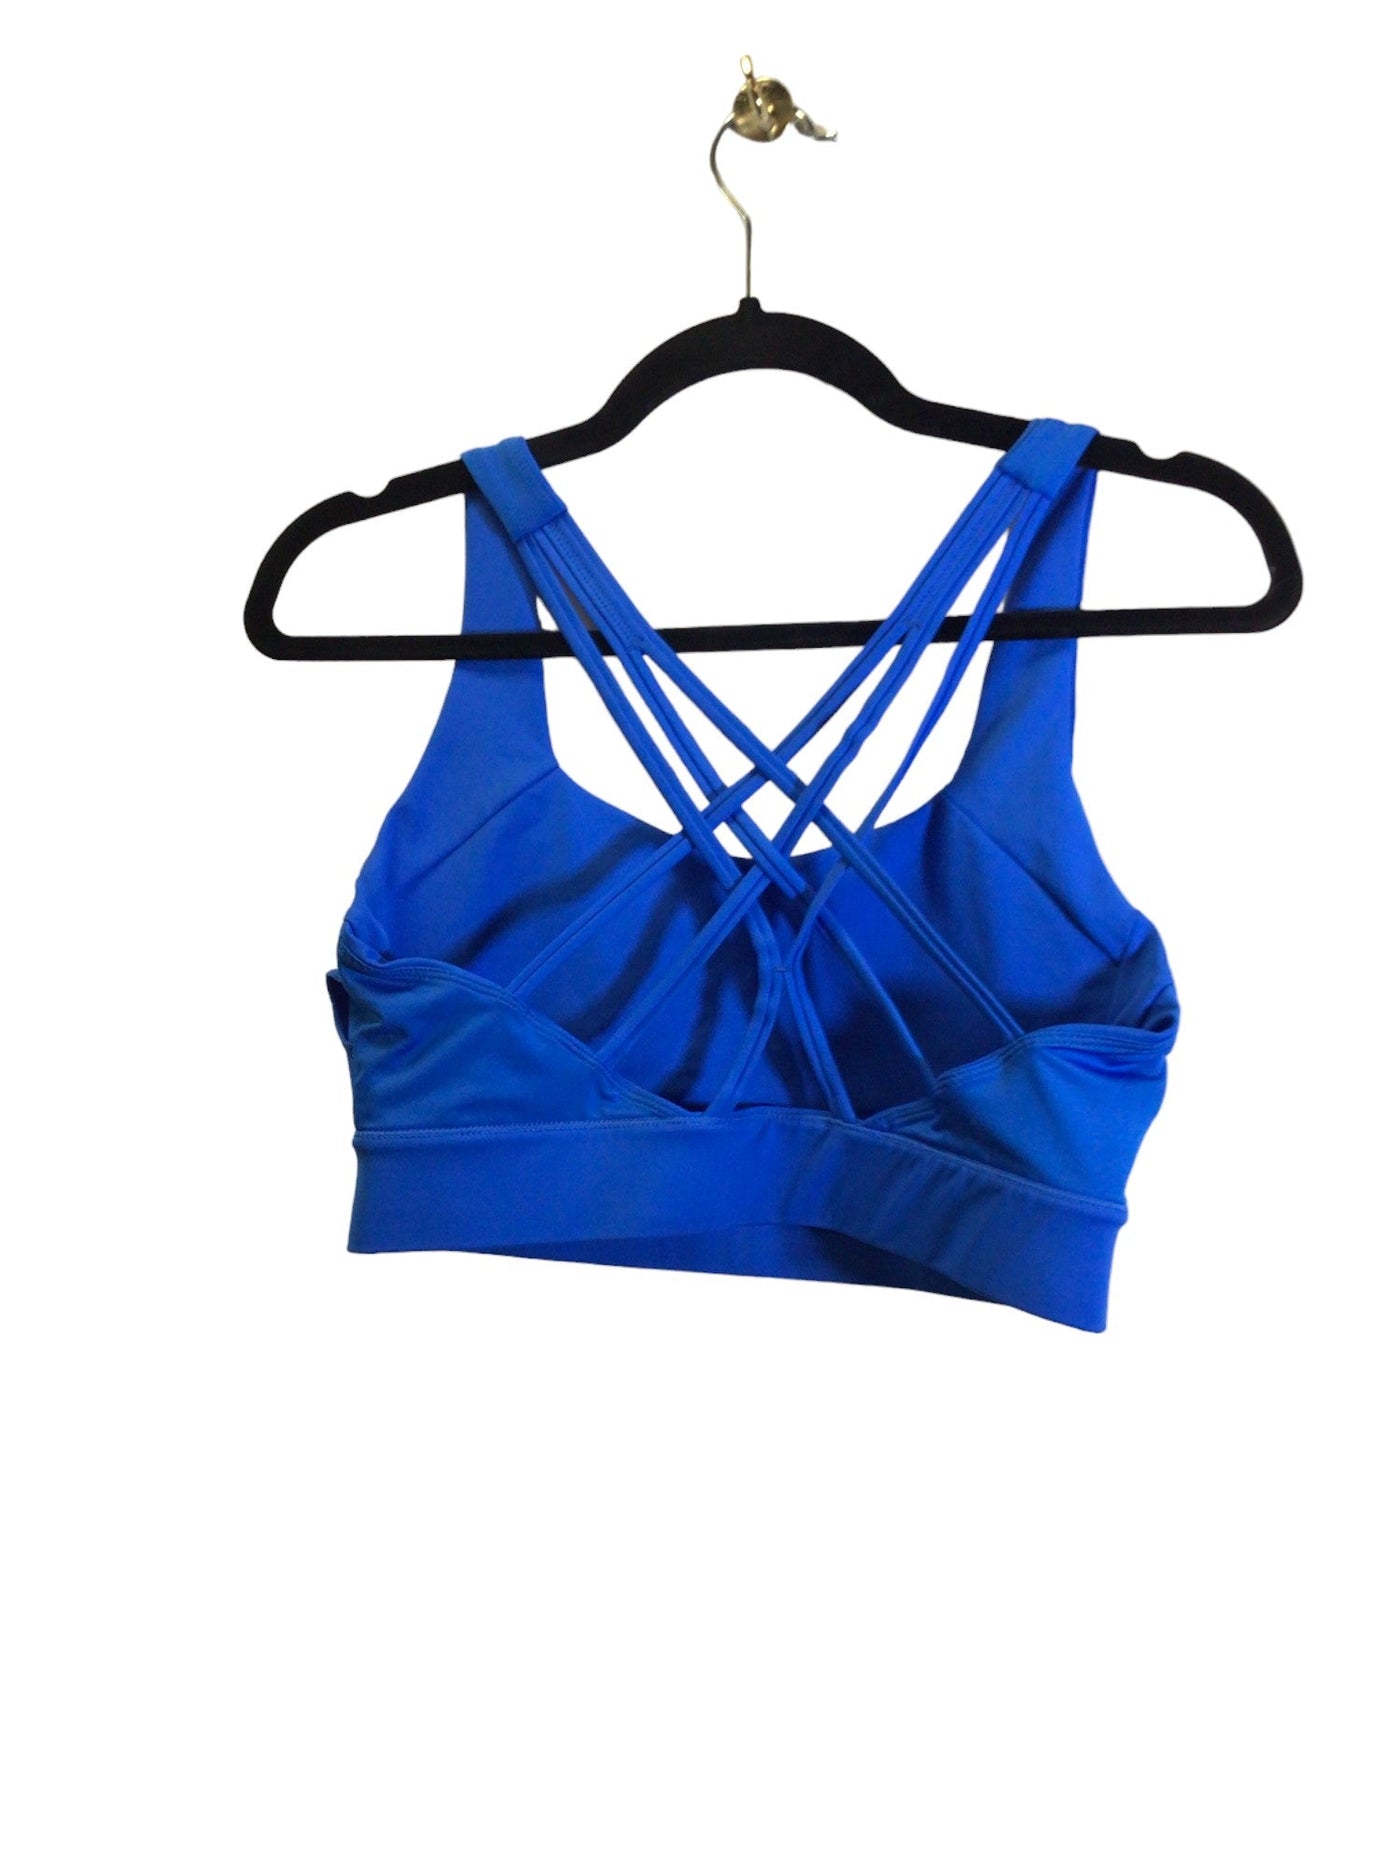 UNBRANDED Women Activewear Sports Bras Regular fit in Blue - Size M | 9.99 $ KOOP